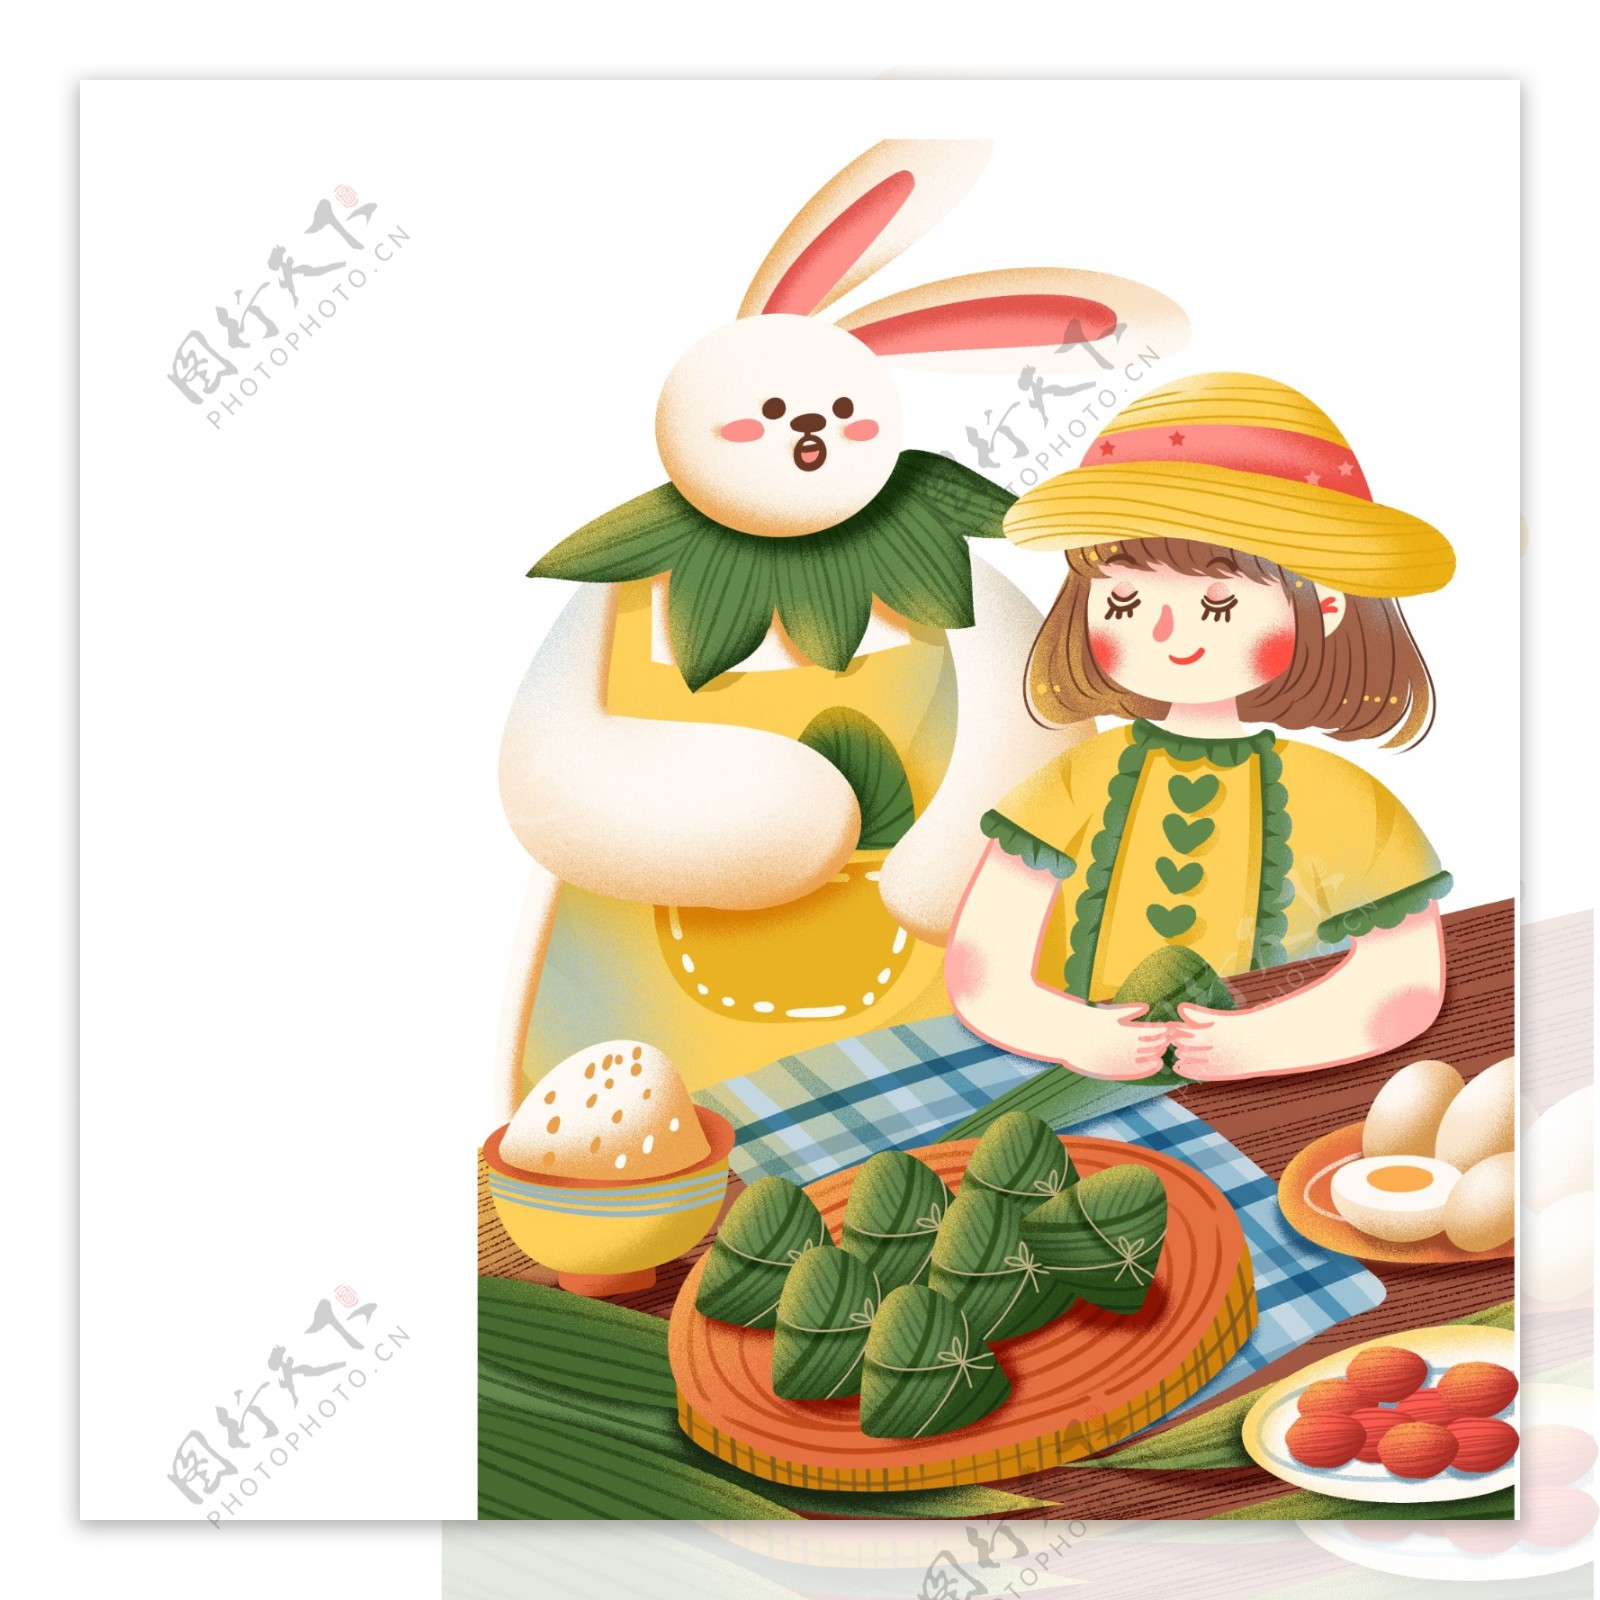 端午节包粽子的女孩和小兔图案元素